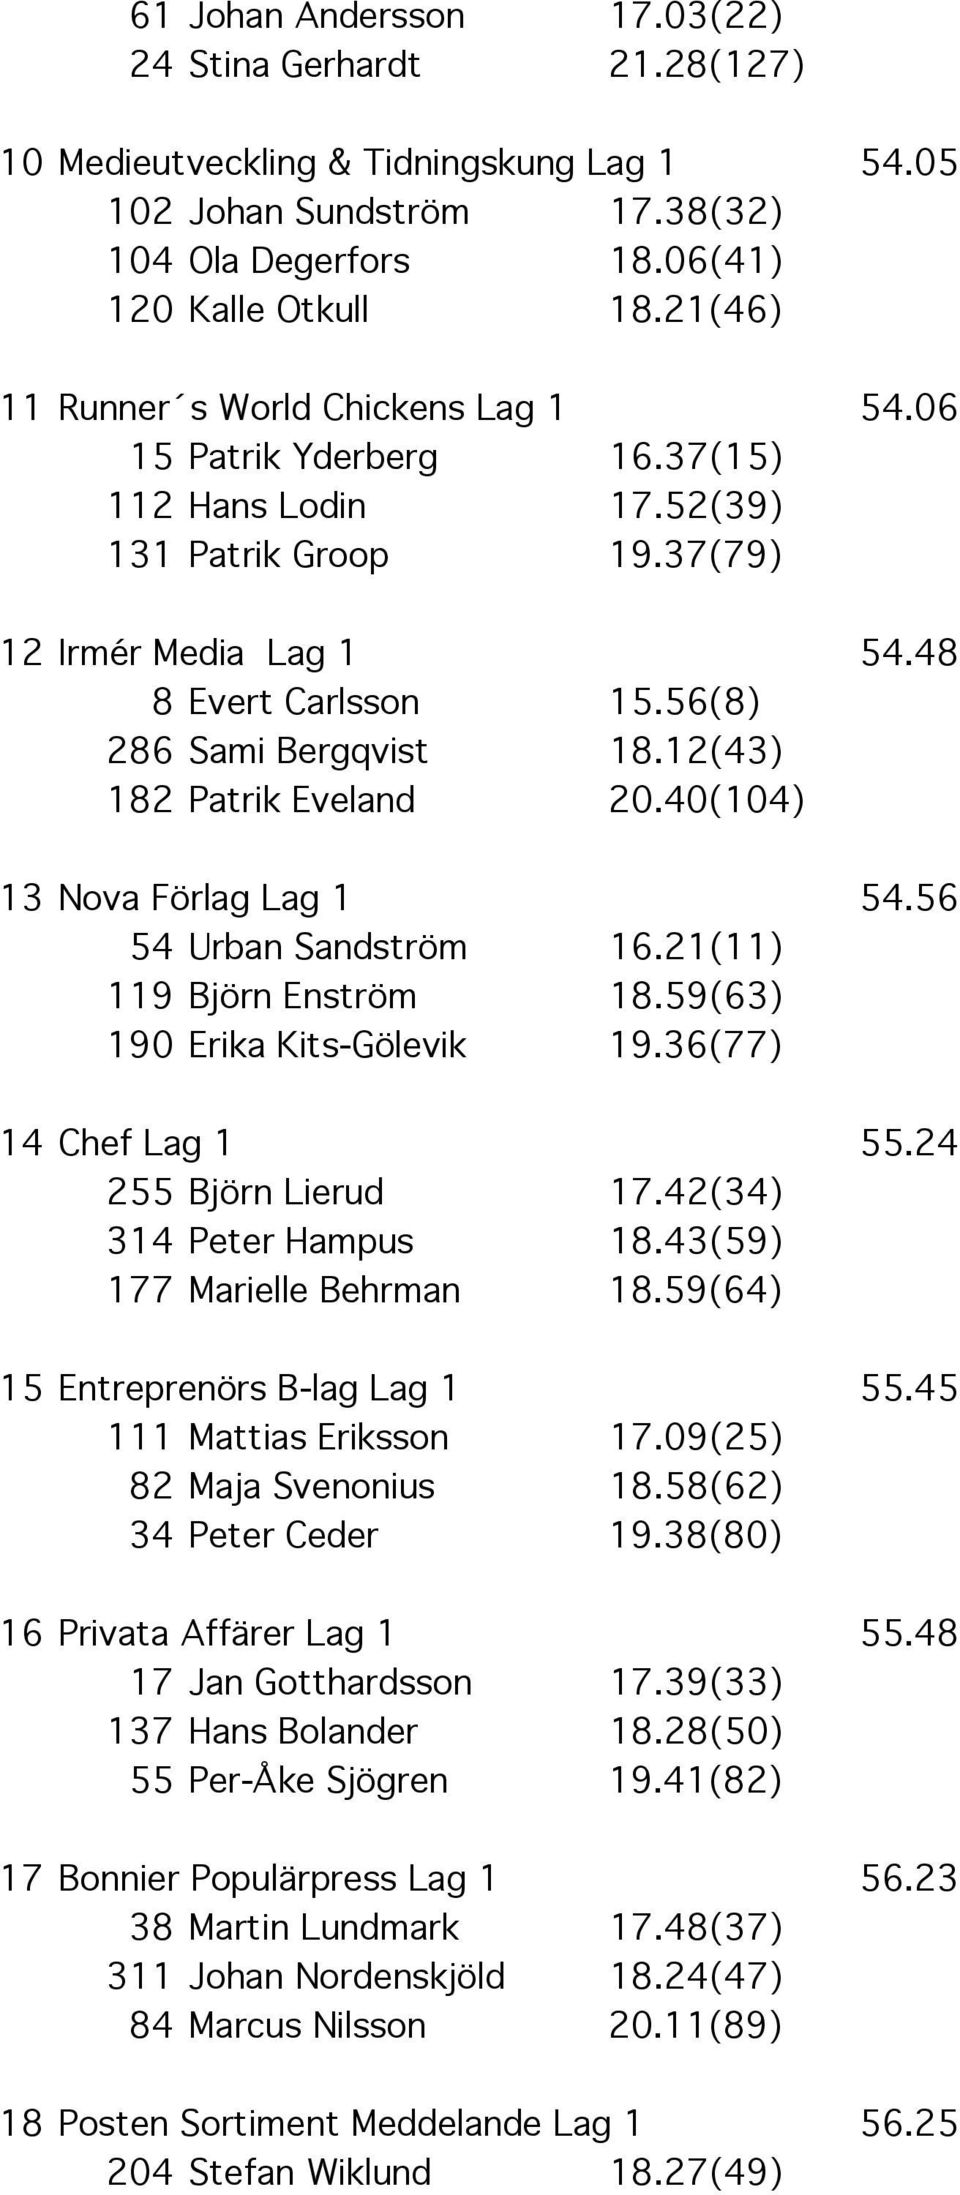 56(8) 286 Sami Bergqvist 18.12(43) 182 Patrik Eveland 20.40(104) 13 Nova Förlag Lag 1 54.56 54 Urban Sandström 16.21(11) 119 Björn Enström 18.59(63) 190 Erika Kits-Gölevik 19.36(77) 14 Chef Lag 1 55.